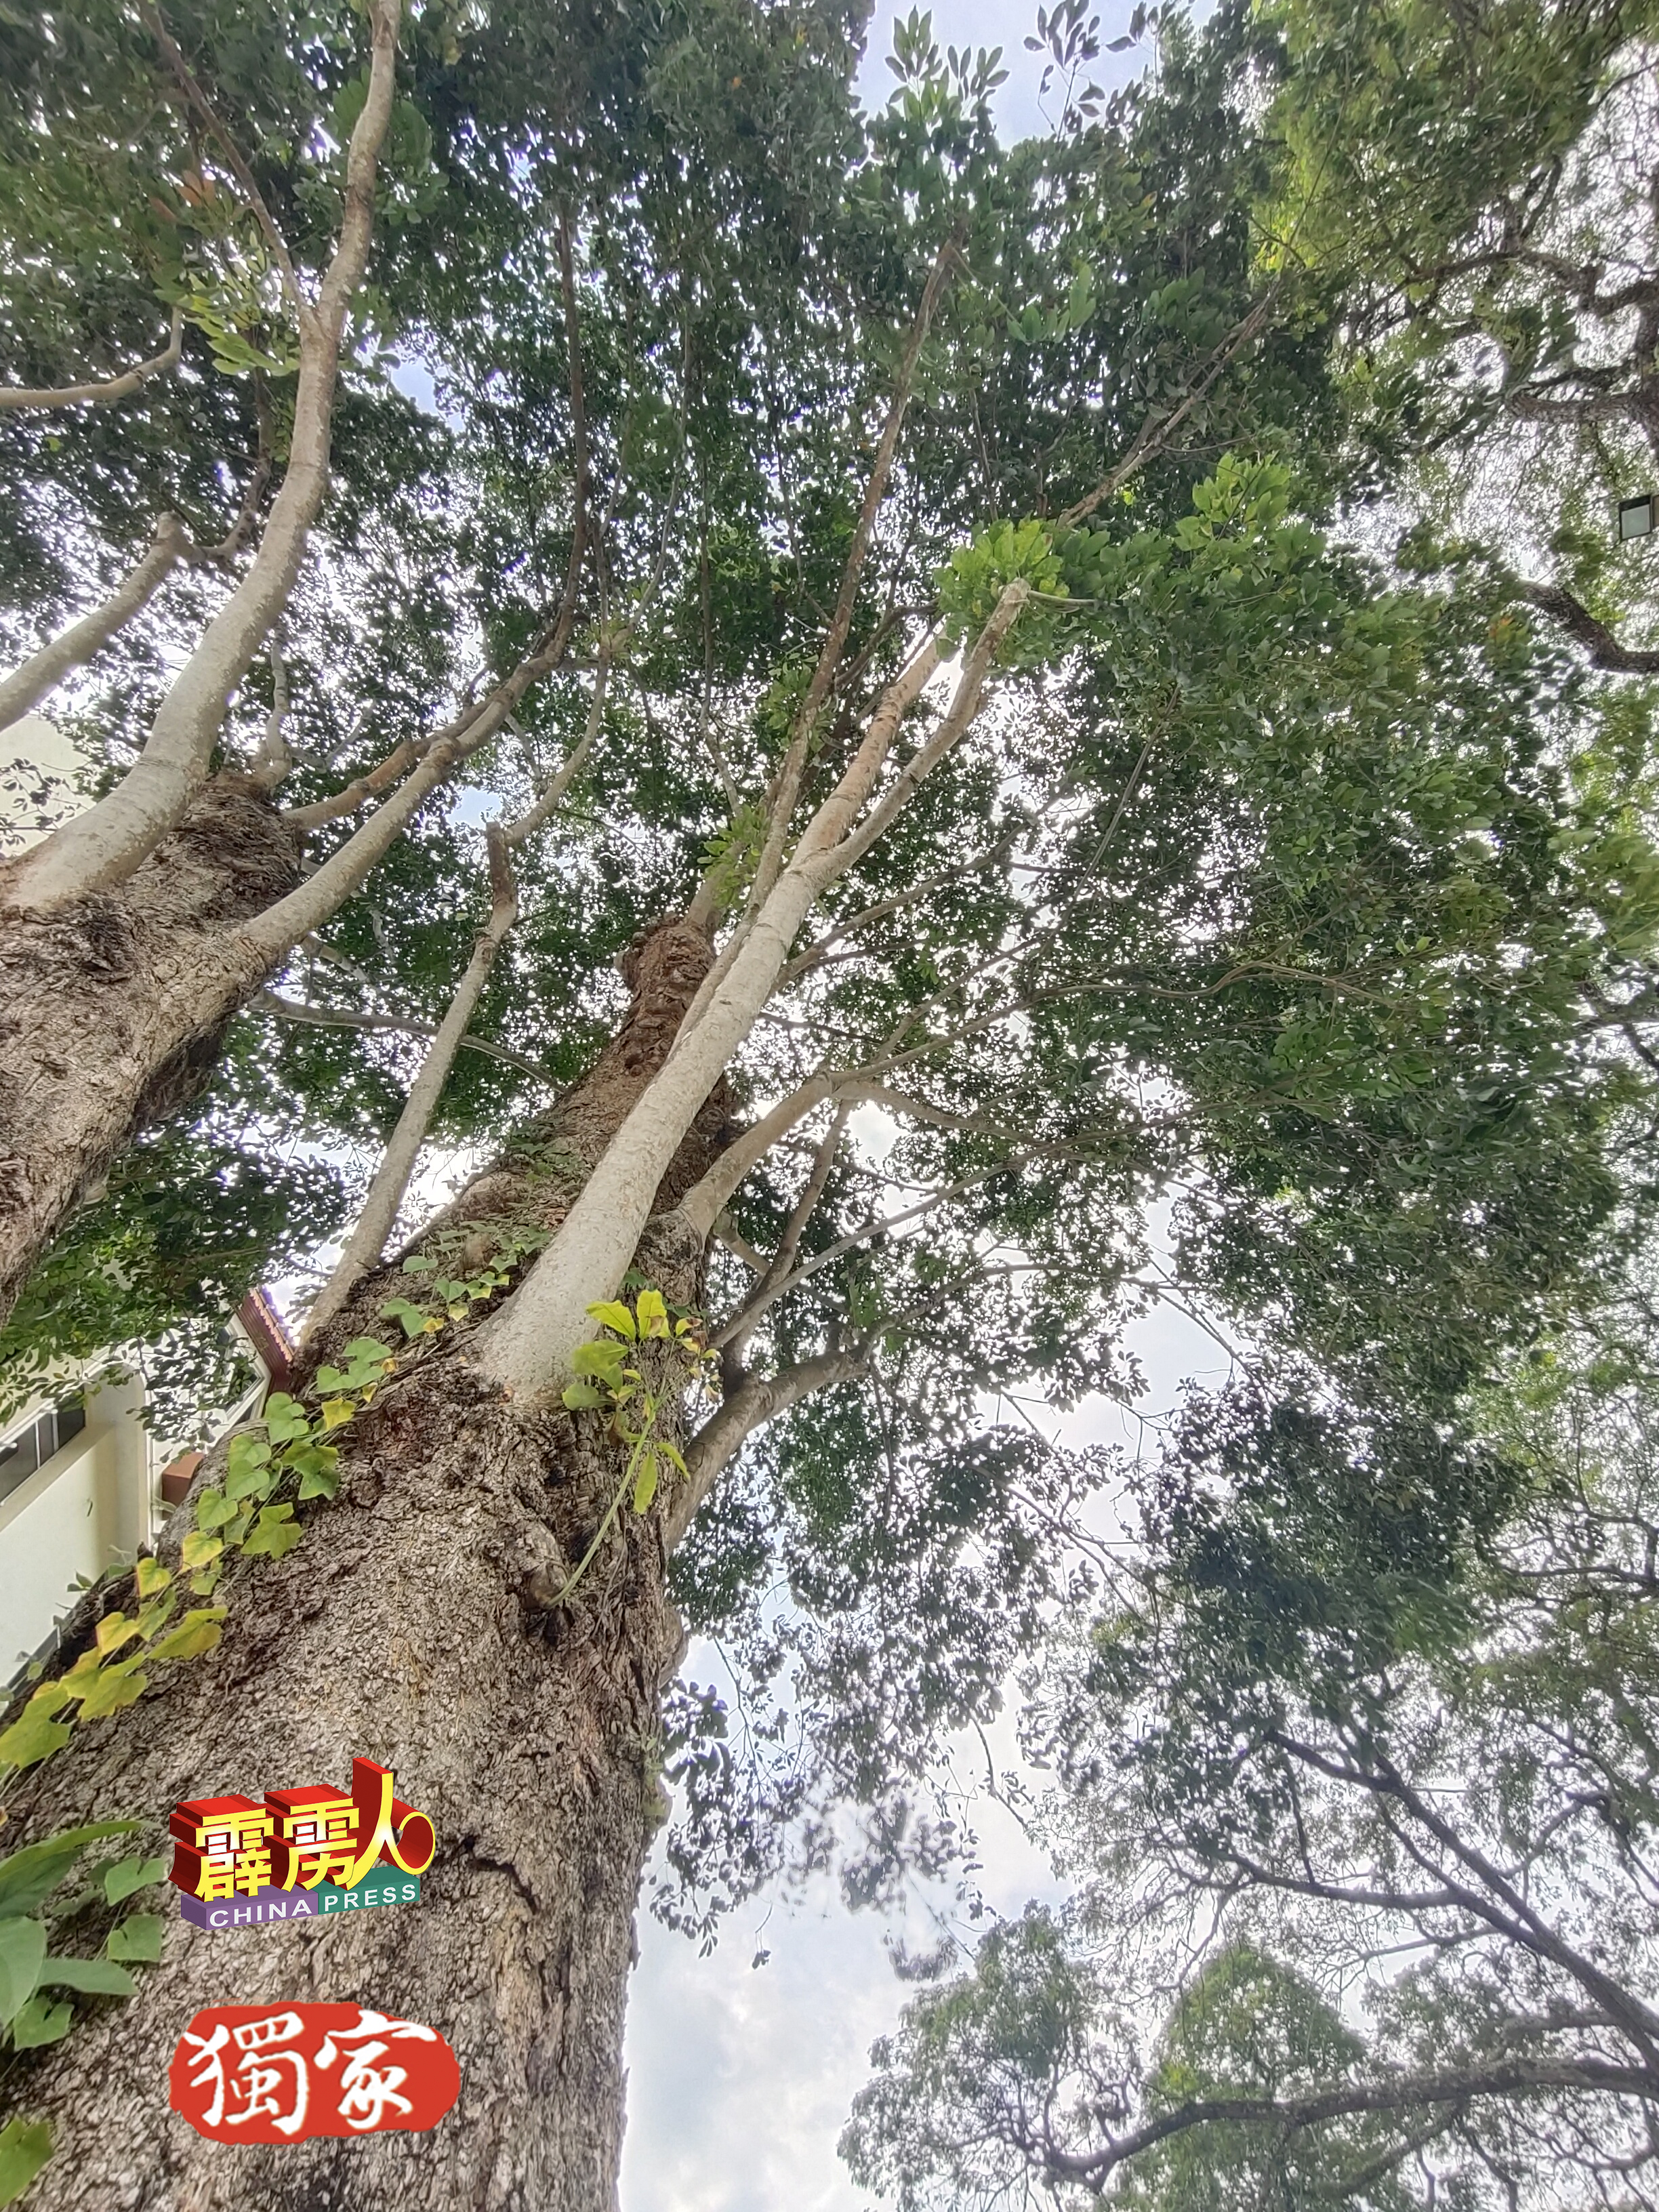 江沙百年胶树仍长出许多枝桠。